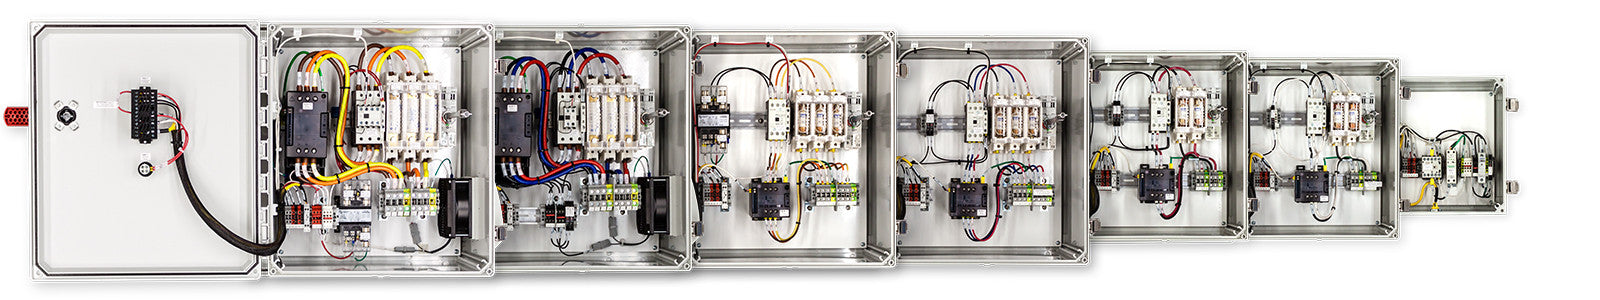 120 VAC Temperature Control Panels